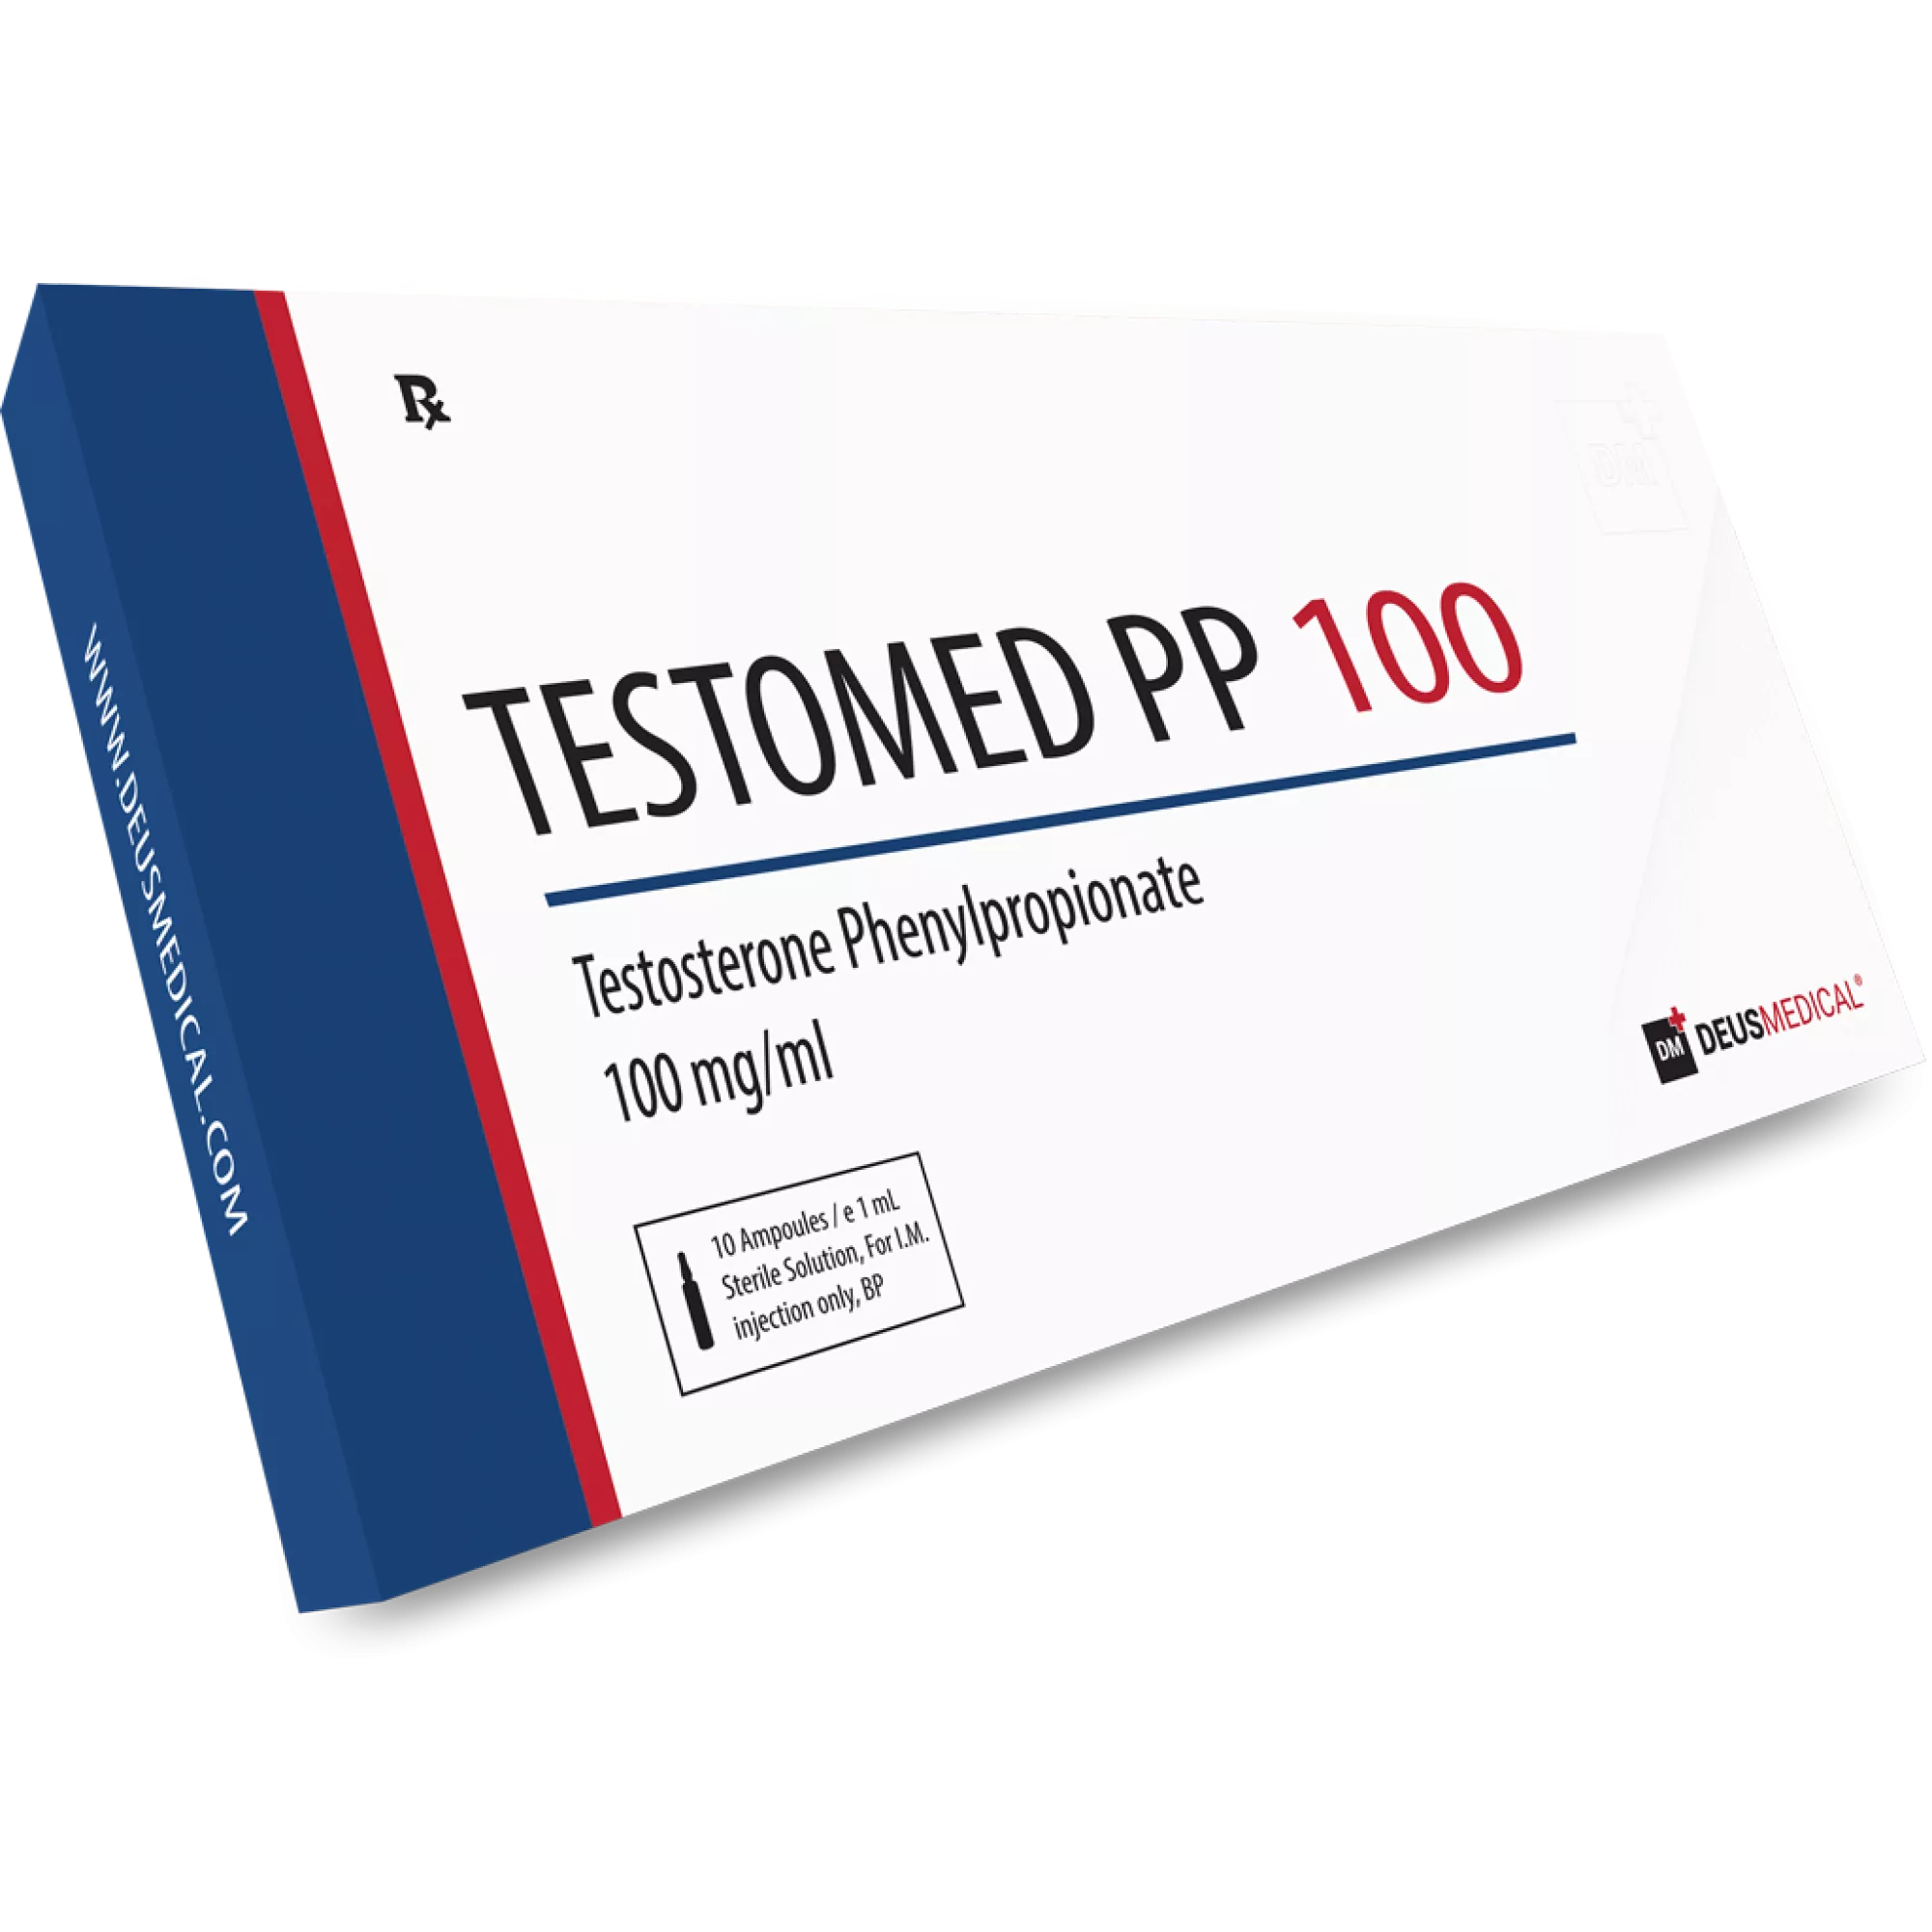 TESTOMED PP 100 (Testosteron Phenylpropionate), Deus Medical, Köp steroider online - www.deuspower.shop